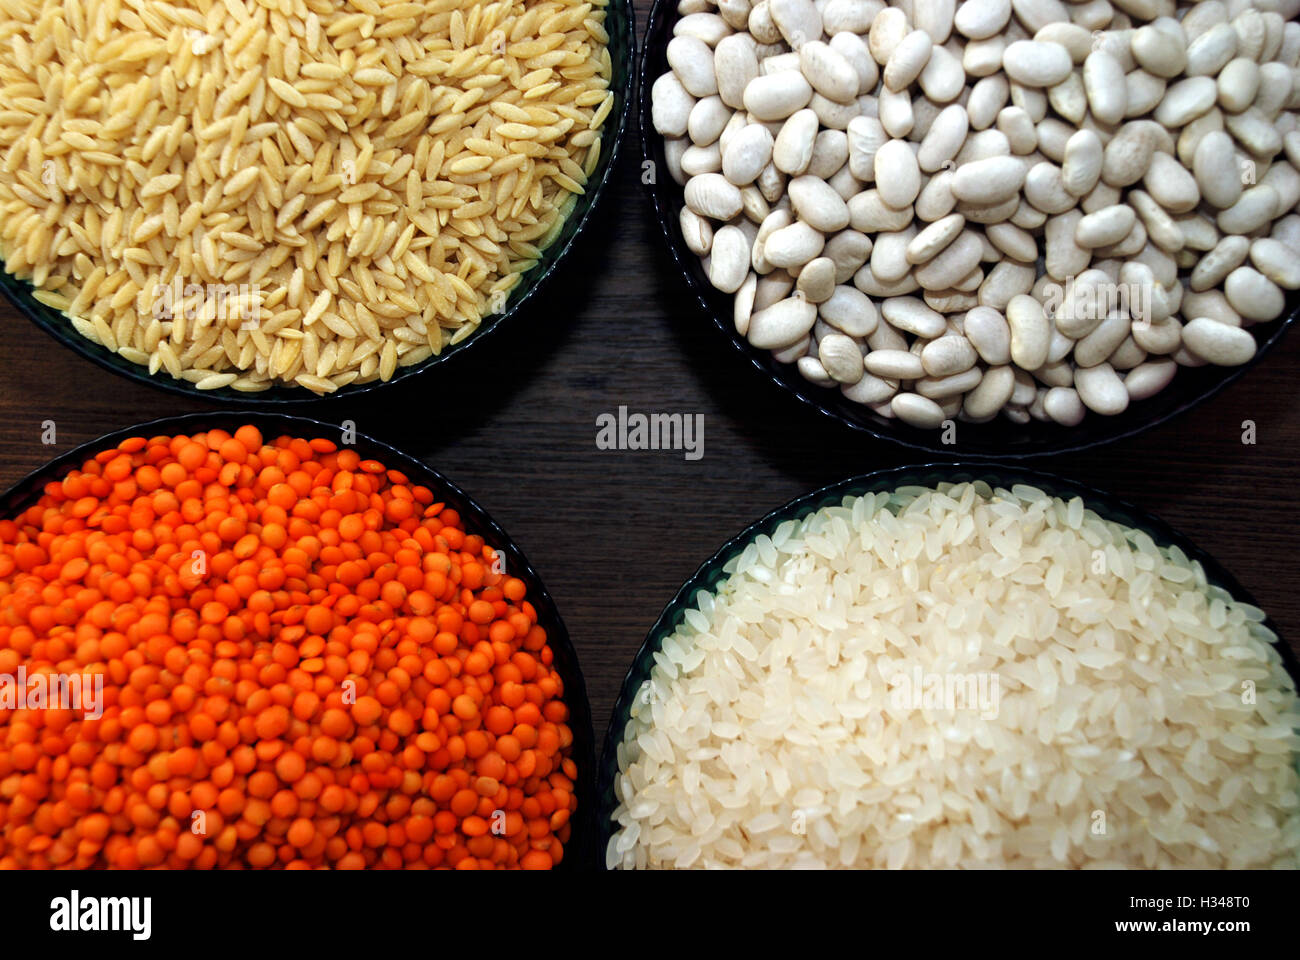 Los cereales y las legumbres. Arroz, lentejas, alubia blanca y cebada noodles Foto de stock